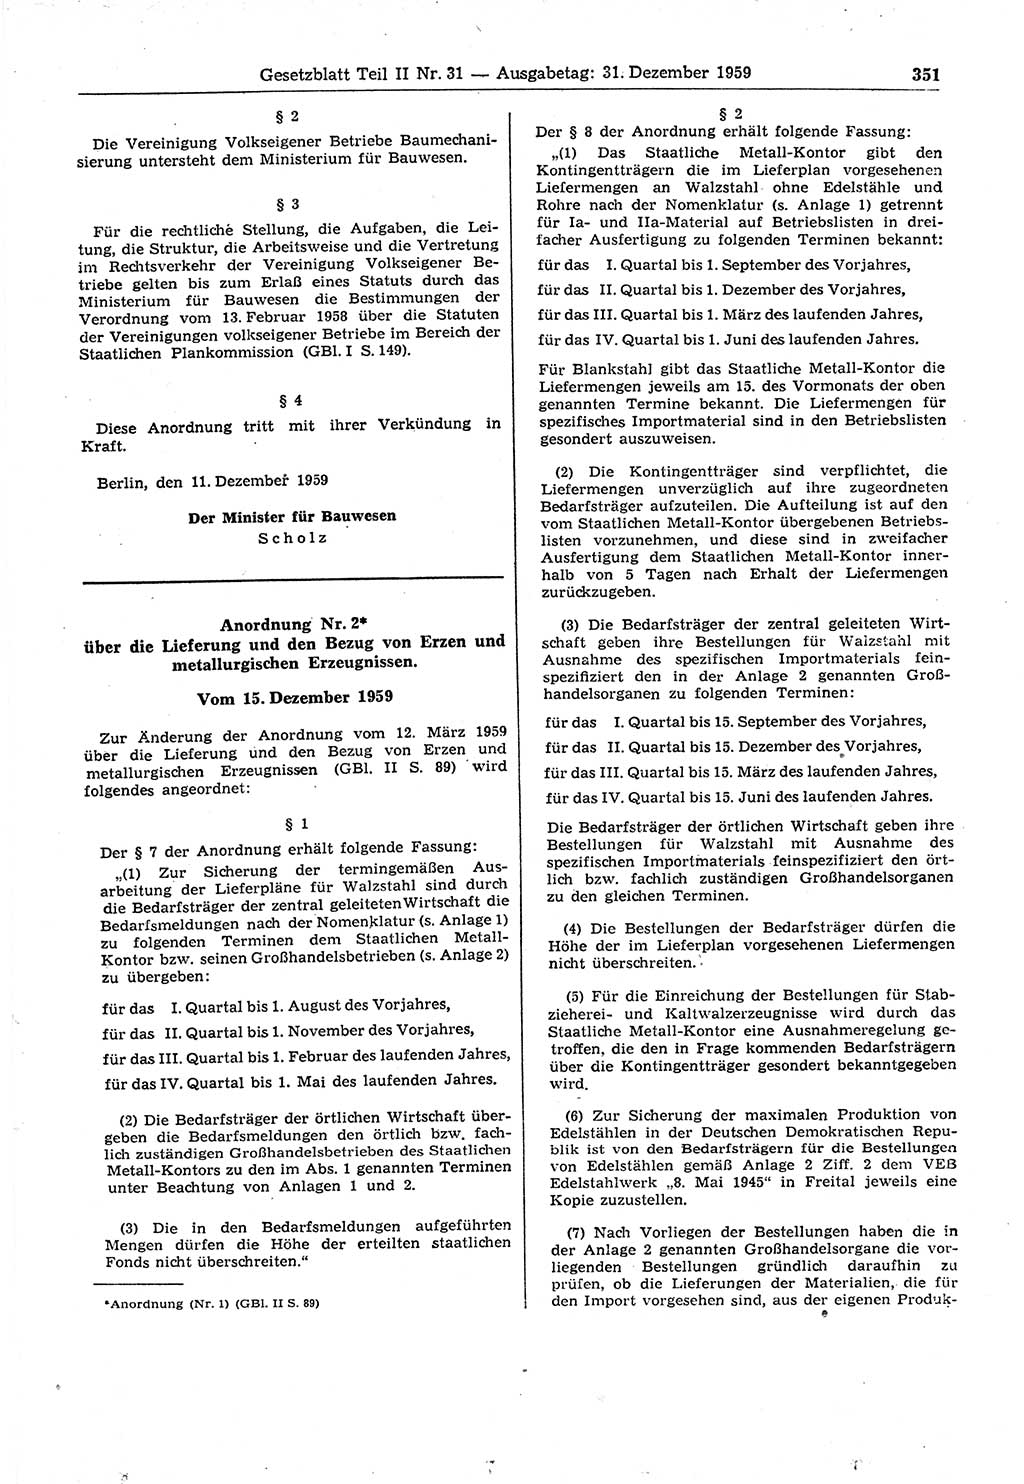 Gesetzblatt (GBl.) der Deutschen Demokratischen Republik (DDR) Teil ⅠⅠ 1959, Seite 351 (GBl. DDR ⅠⅠ 1959, S. 351)